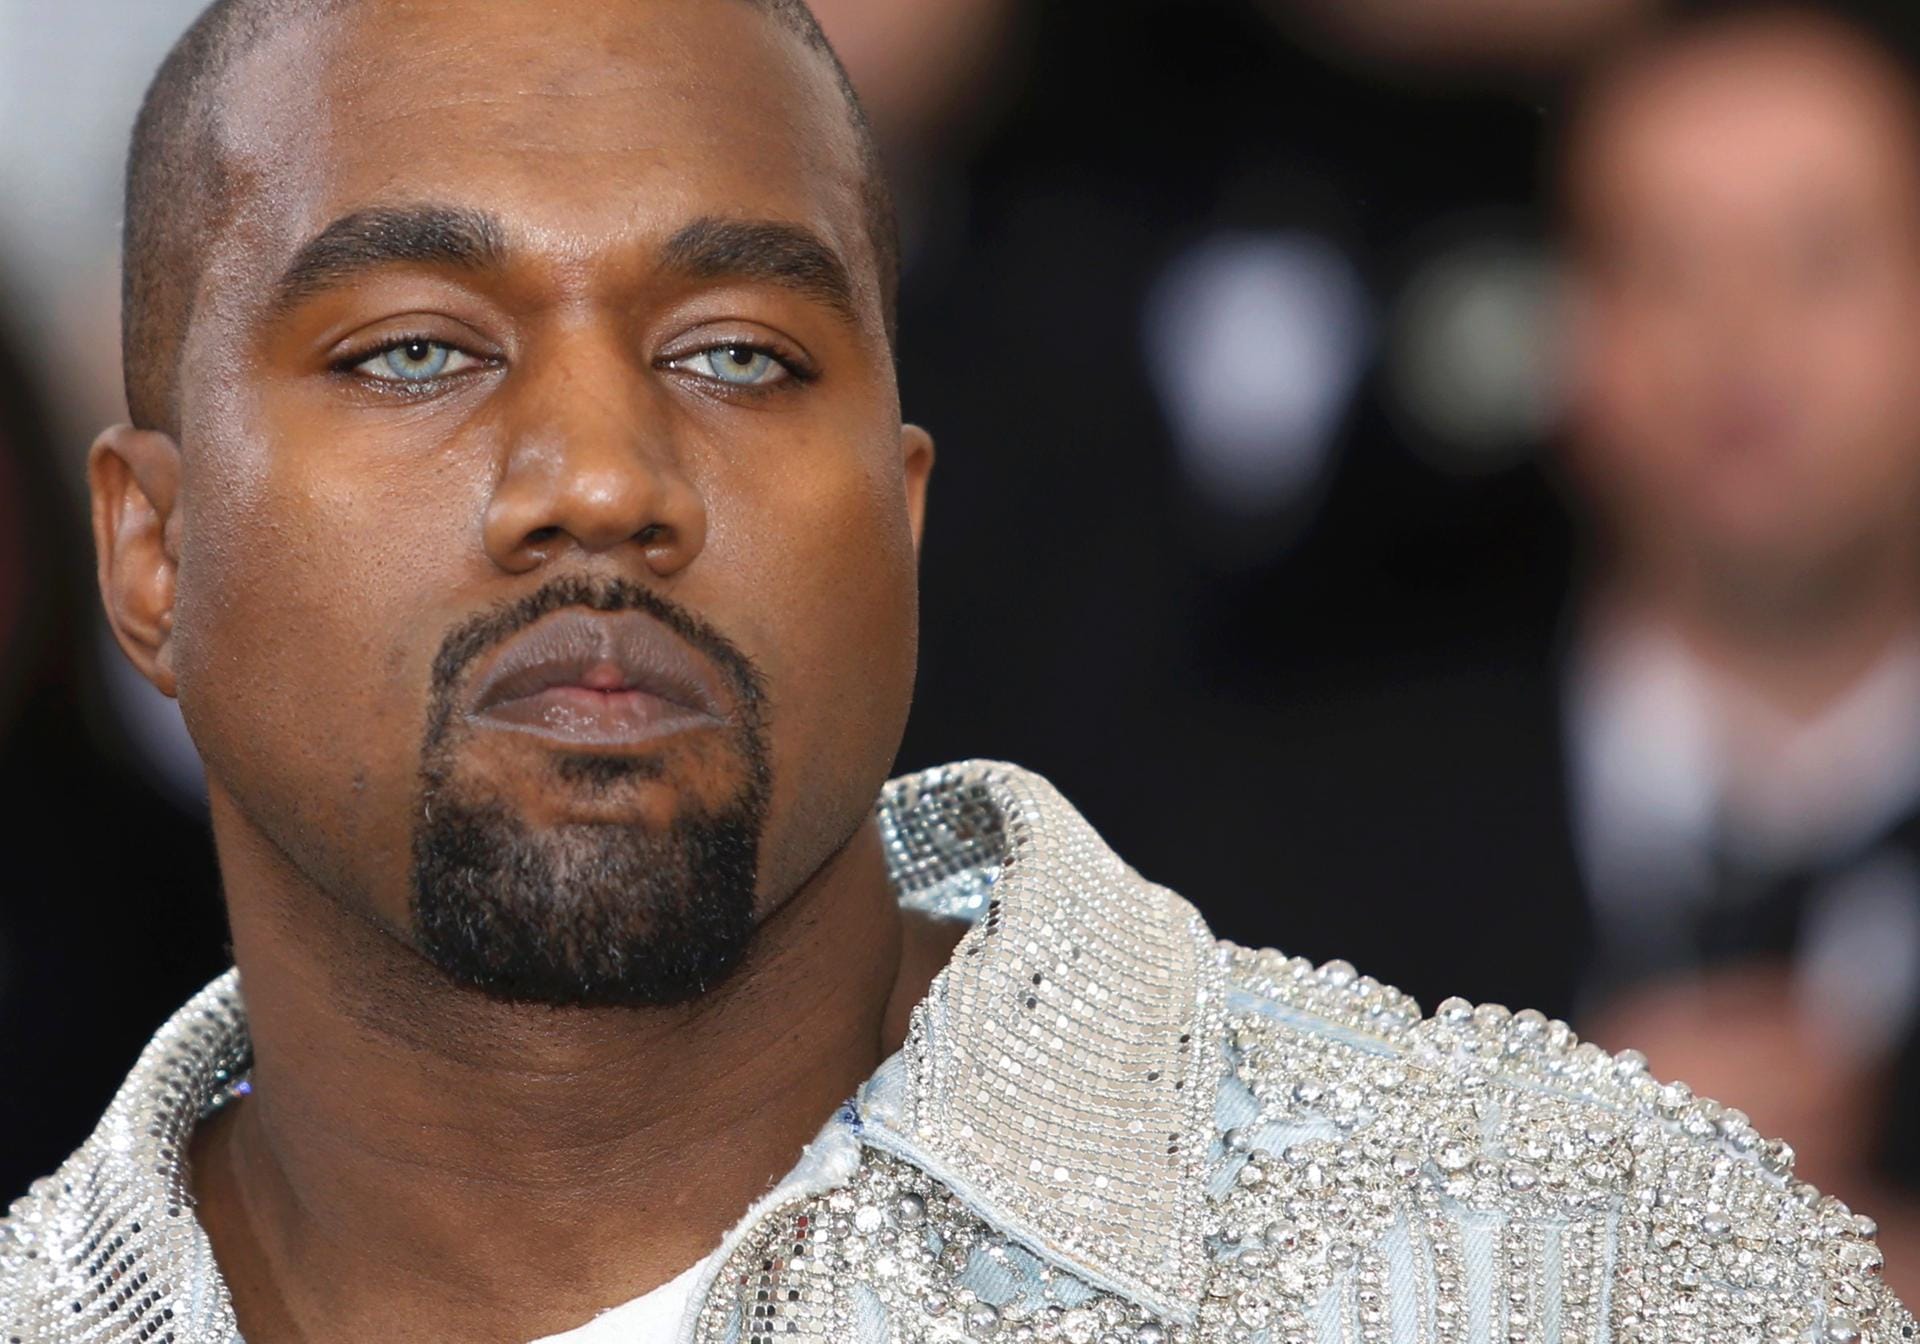 Kanye versuchte sich mit einem besonderen Accessoire in Szene zu setzen: blauen Kontaktlinsen.